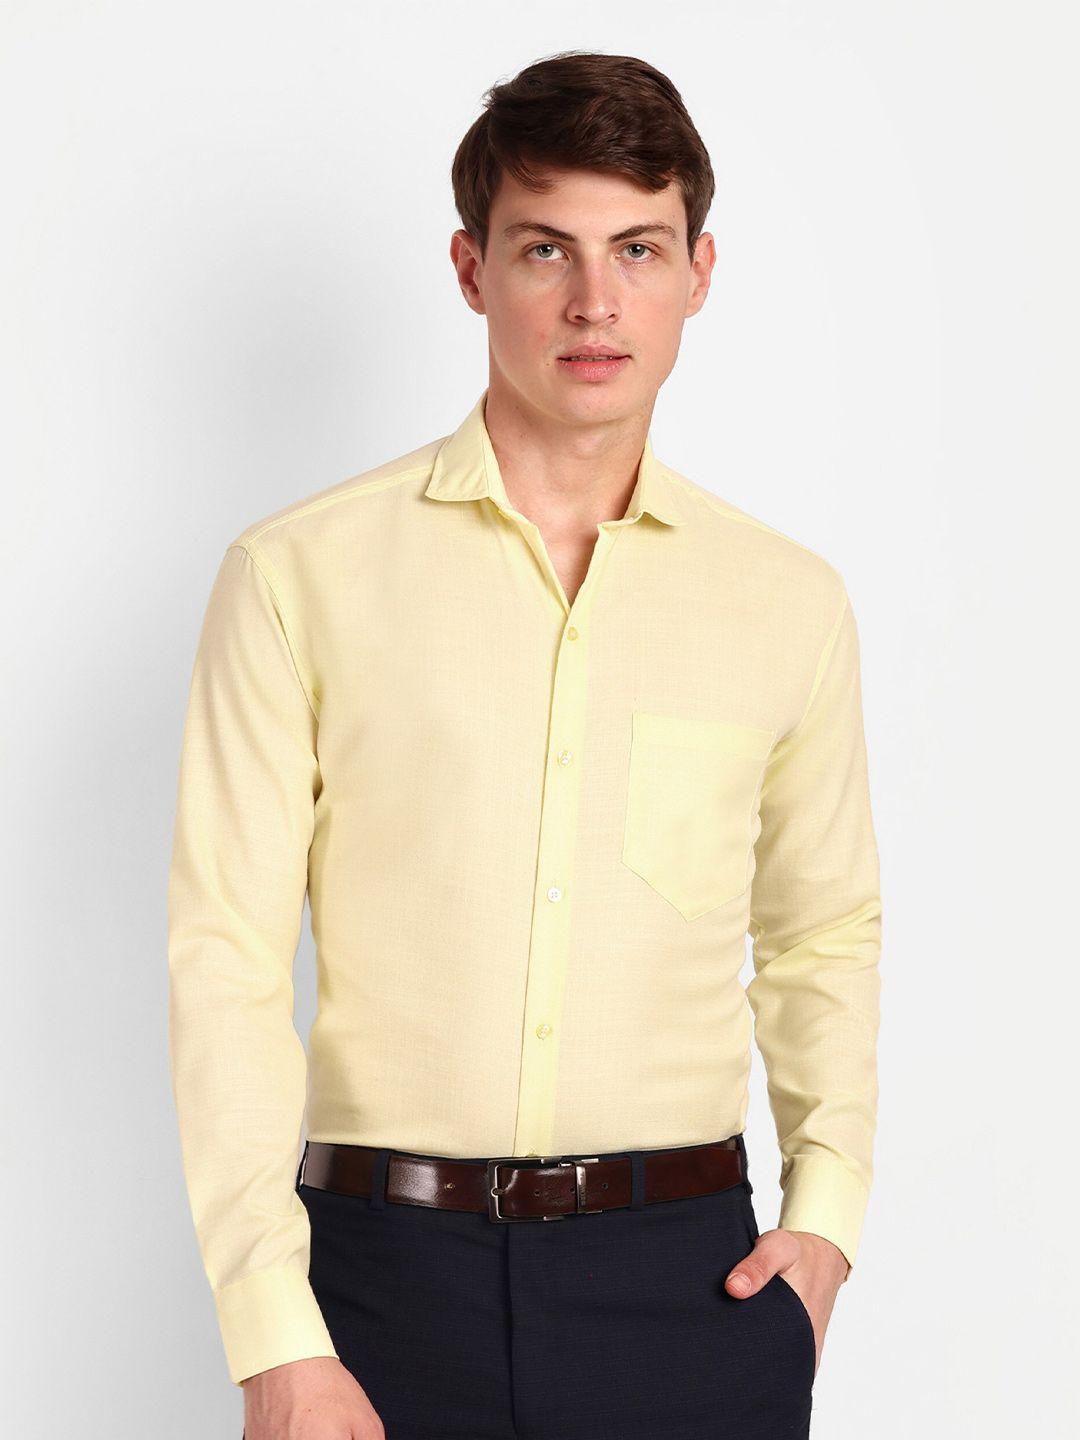 colorwings men yellow comfort semi sheer formal shirt